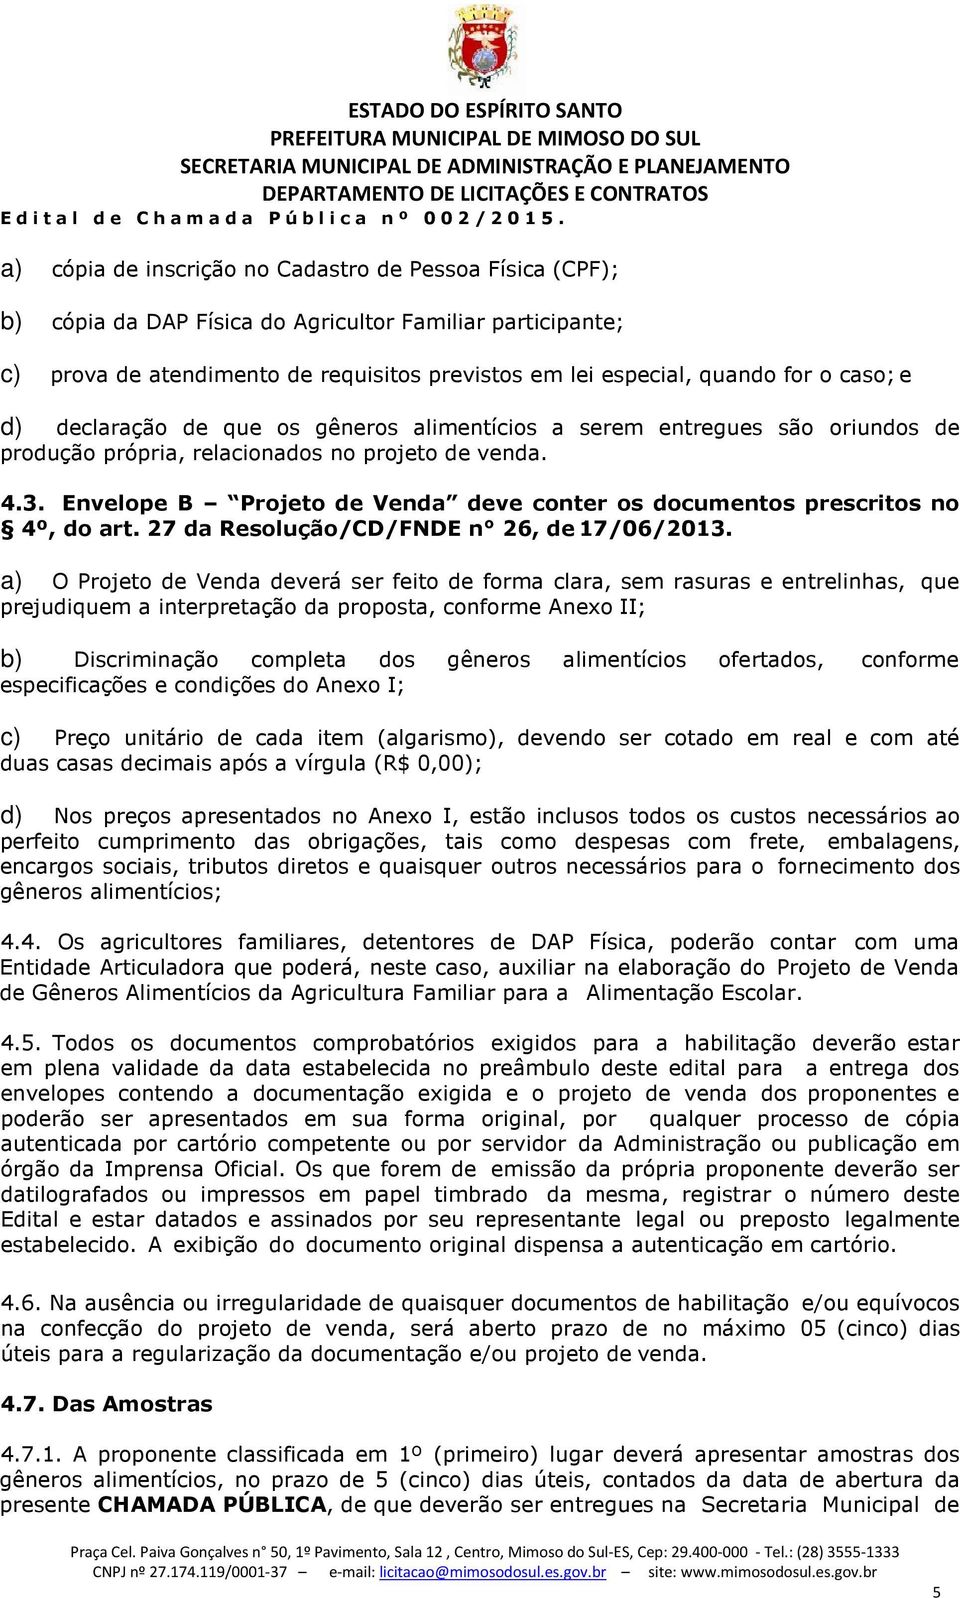 Envelope B Projeto de Venda deve conter os documentos prescritos no 4º, do art. 27 da Resolução/CD/FNDE n 26, de 17/06/2013.